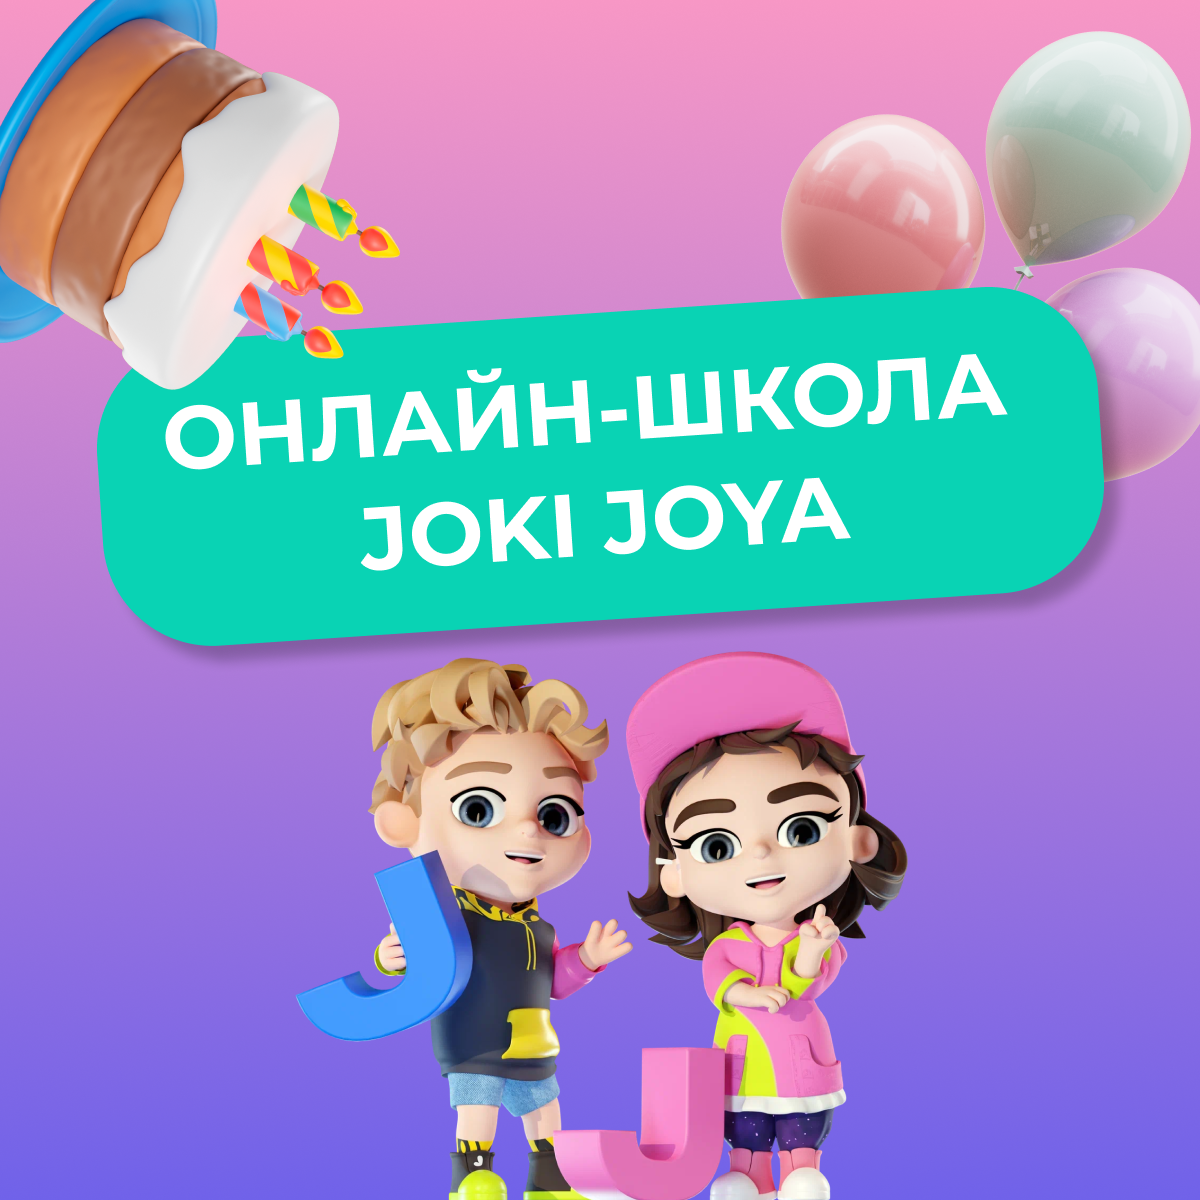 Онлайн-школа Joki Joya отметила День рождения!